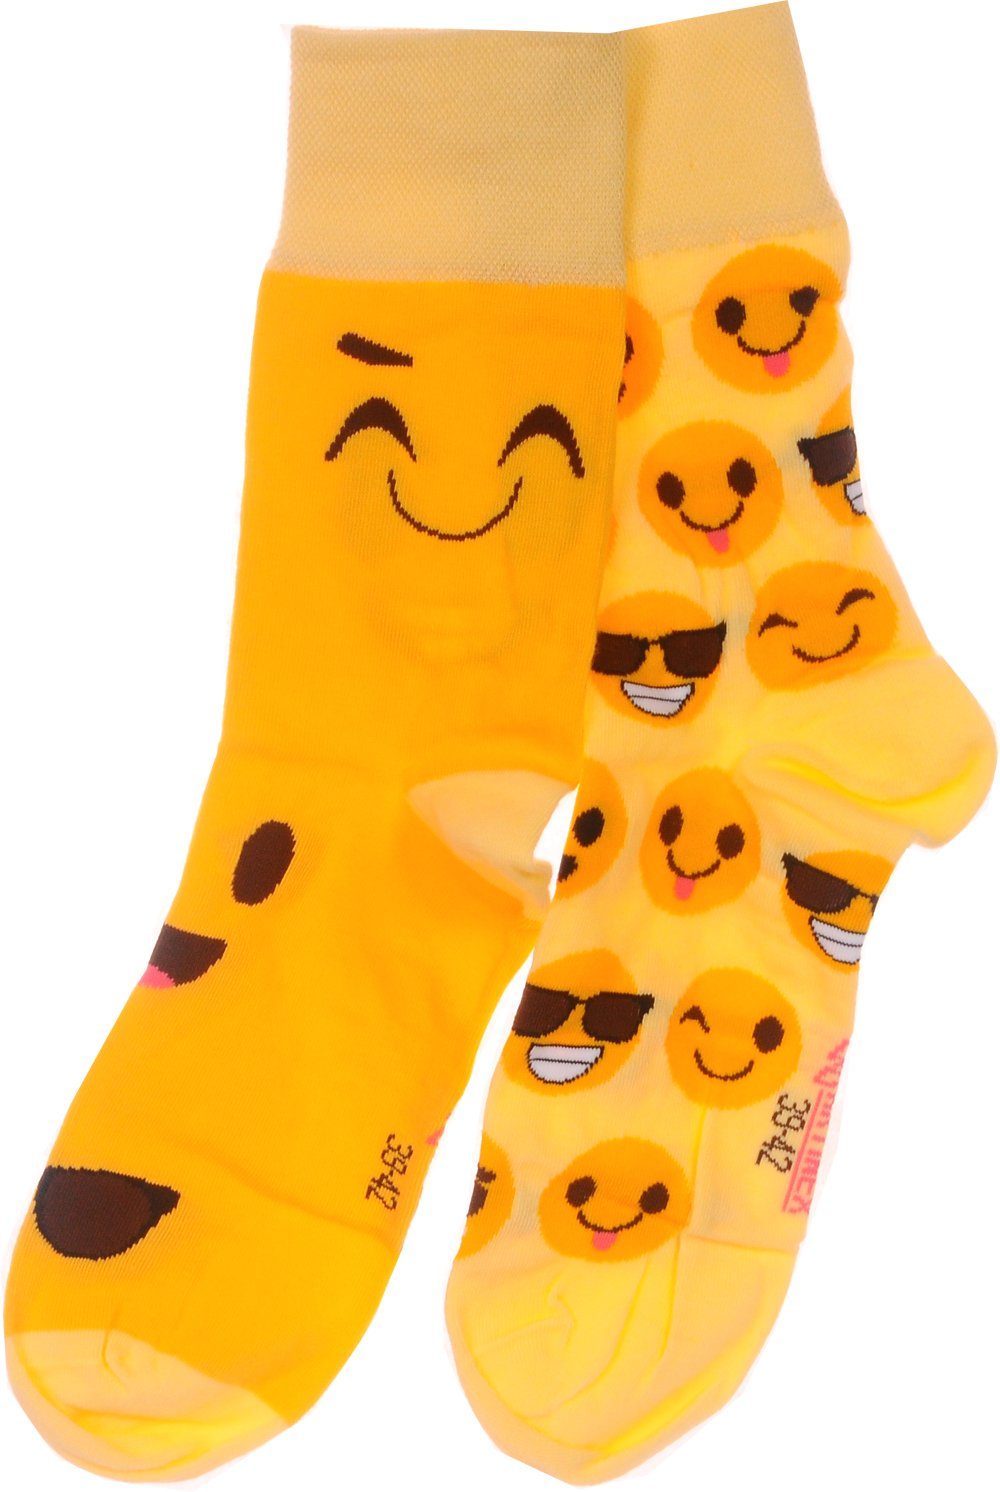 Martinex Socken 1 Paar Socken lustige bunte witzige Strümpfe Damen Herren  Kinder 35 38 39 42 43 46 bunt